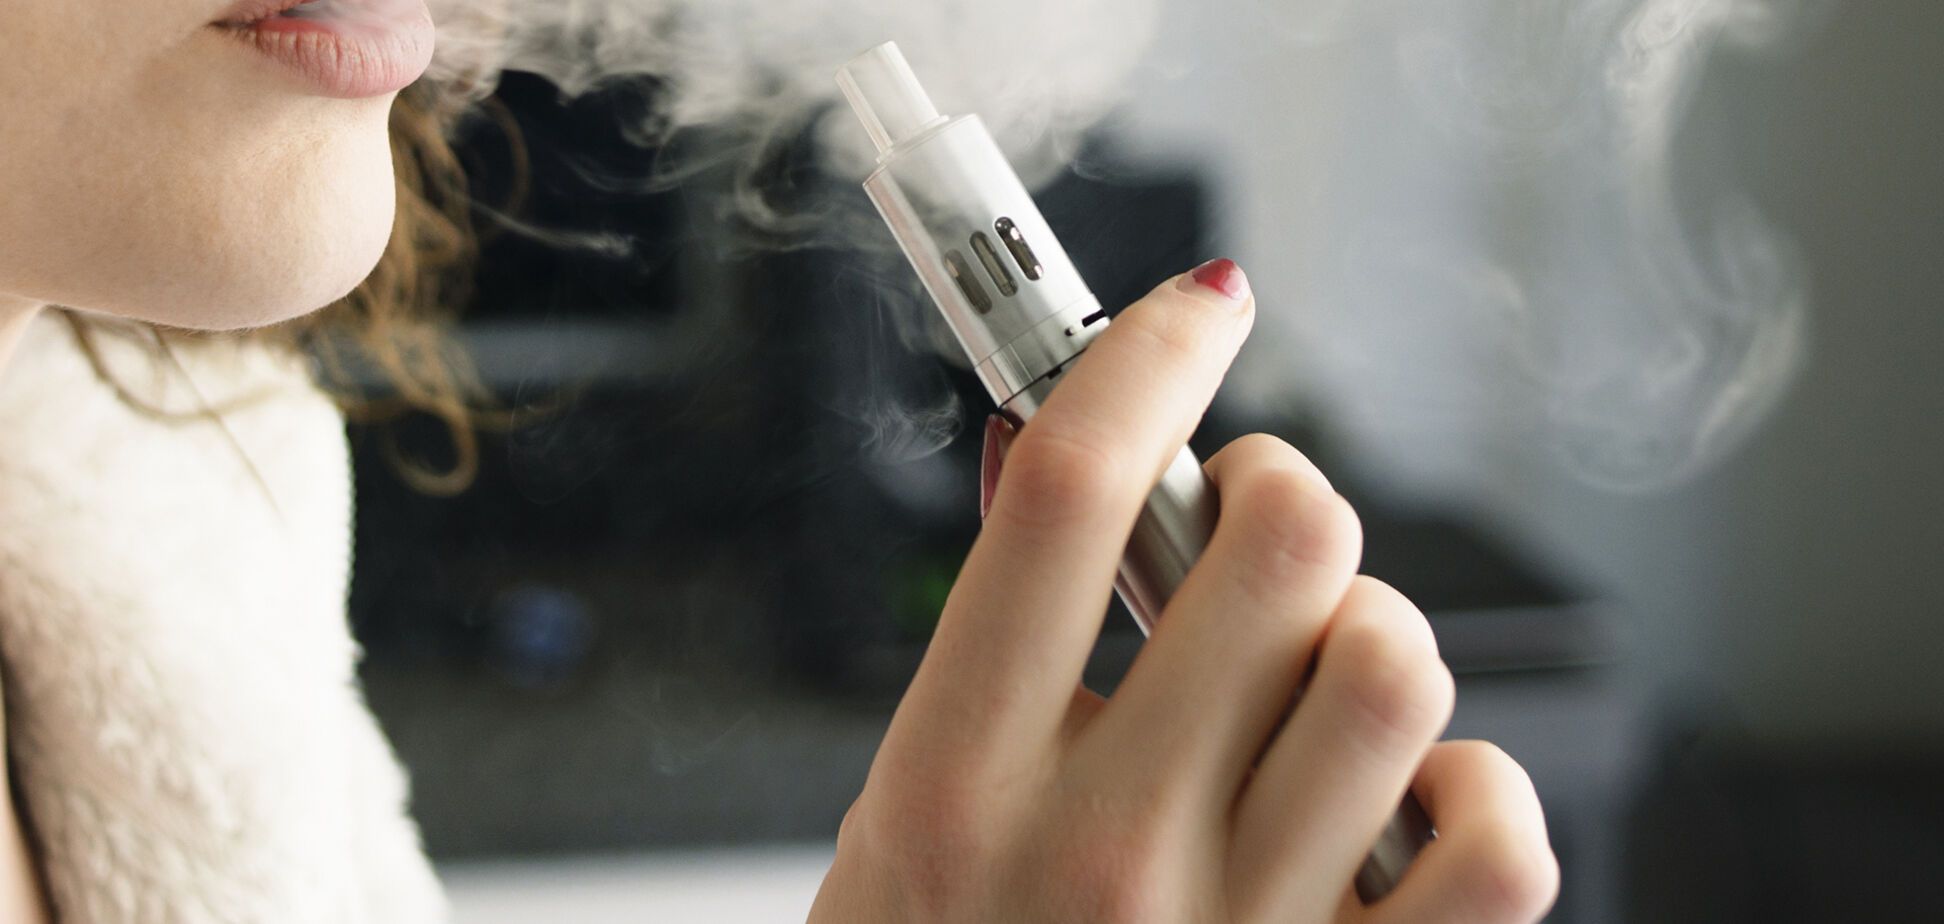 Знижує шанси: вчені розвінчали головний міф про електронні сигарети